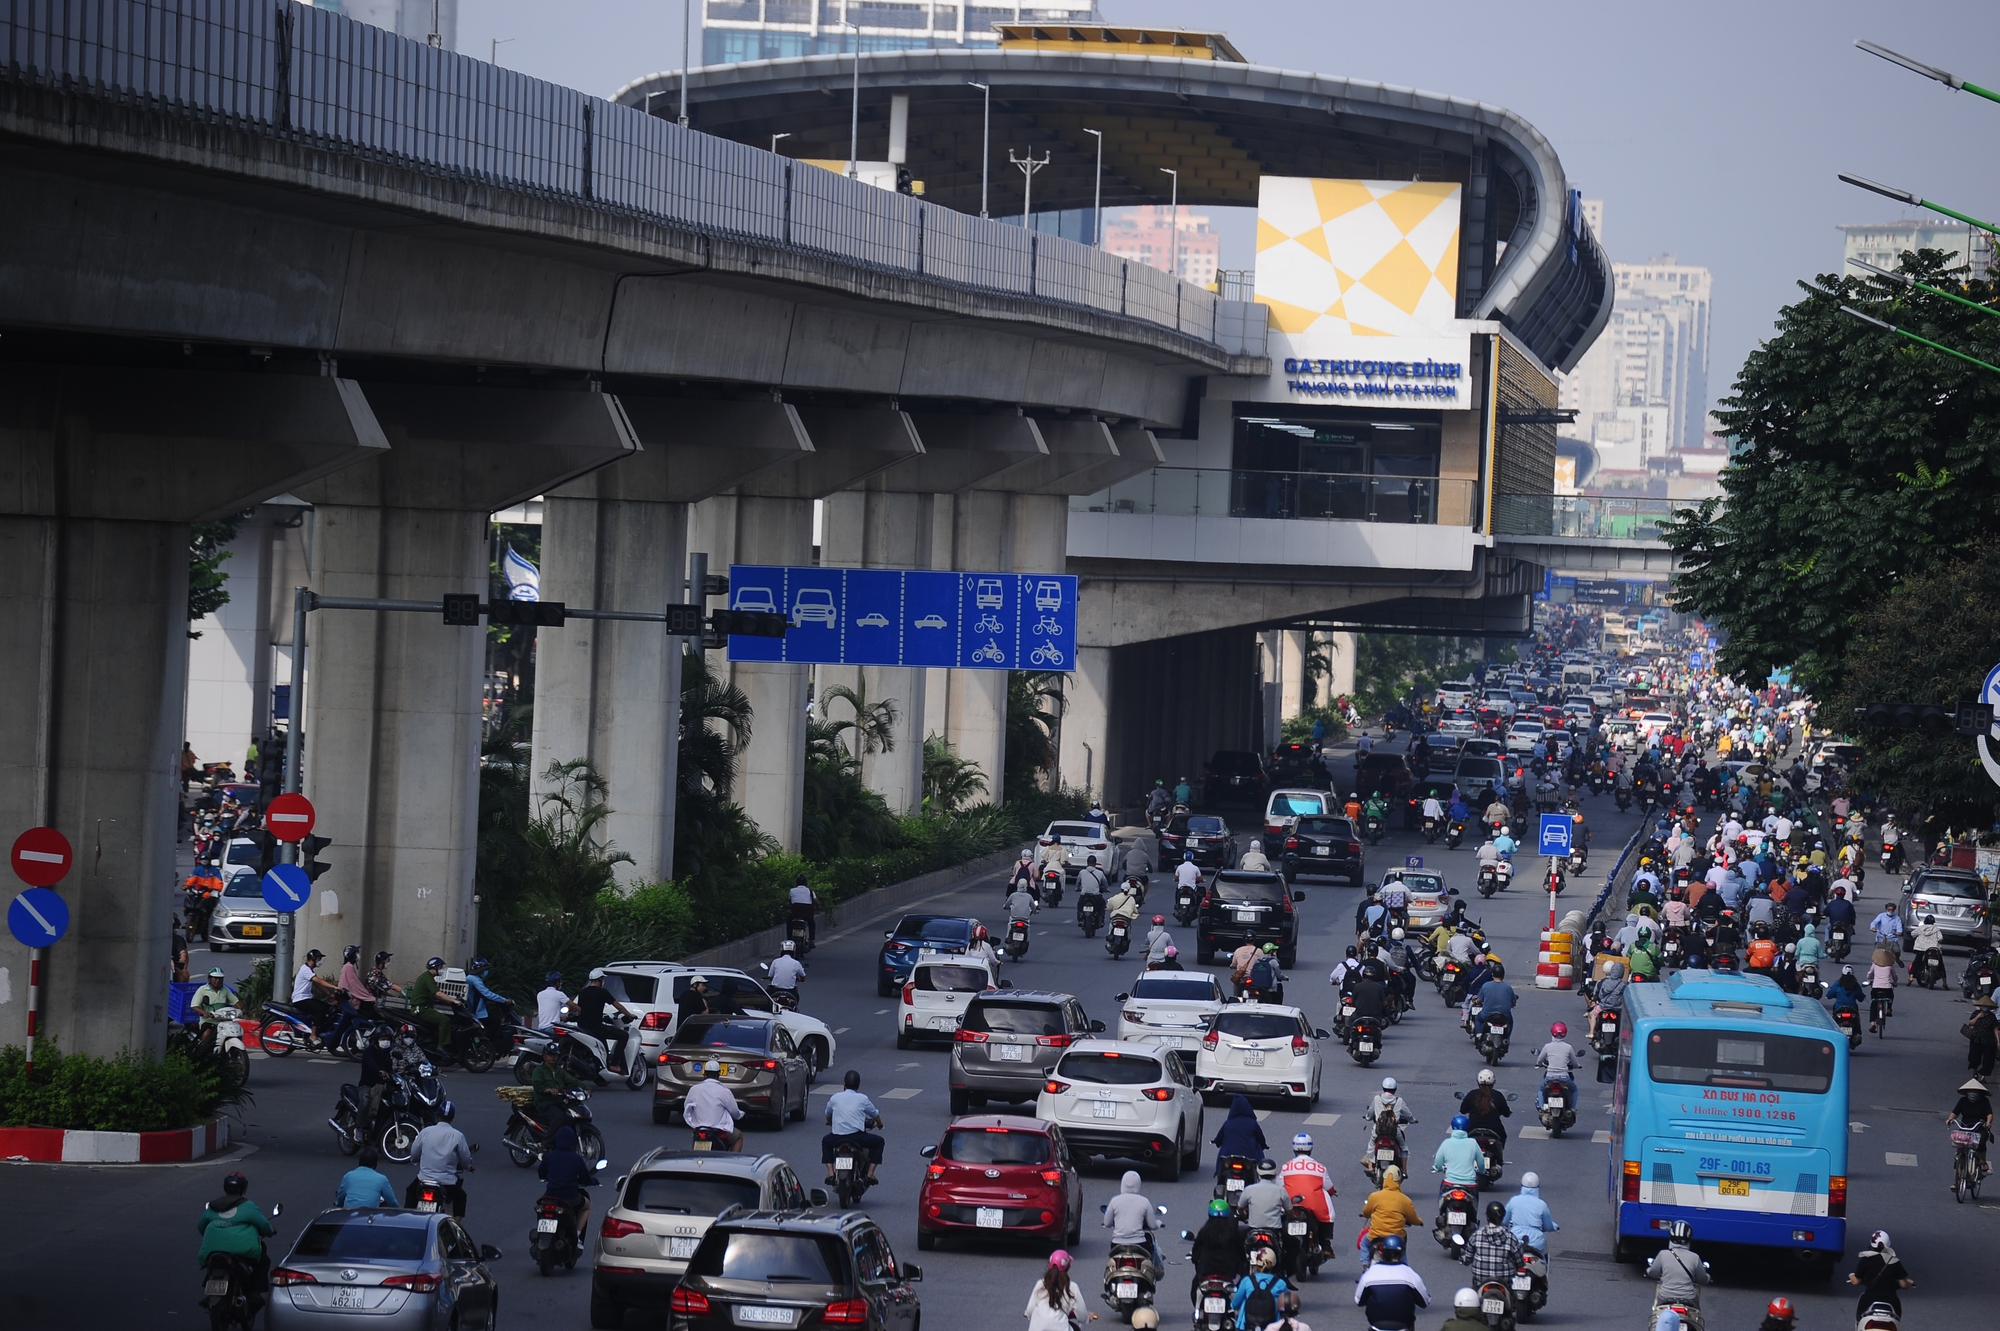 Hà Nội: Đường Nguyễn Trãi vẫn lộn xộn, xe đi sai làn chưa bị xử phạt - Ảnh 4.